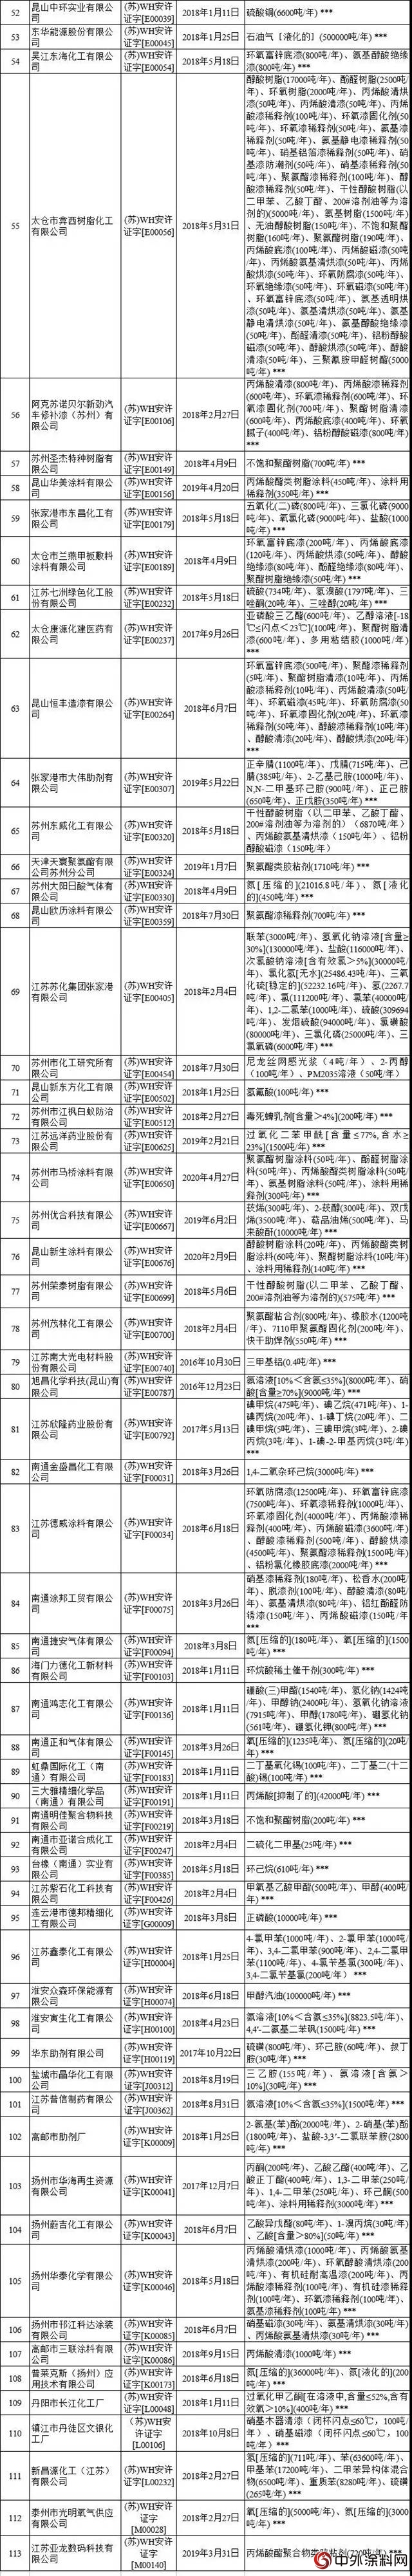 江苏地区113家危化企业安全生产许可证被注销!(名单)